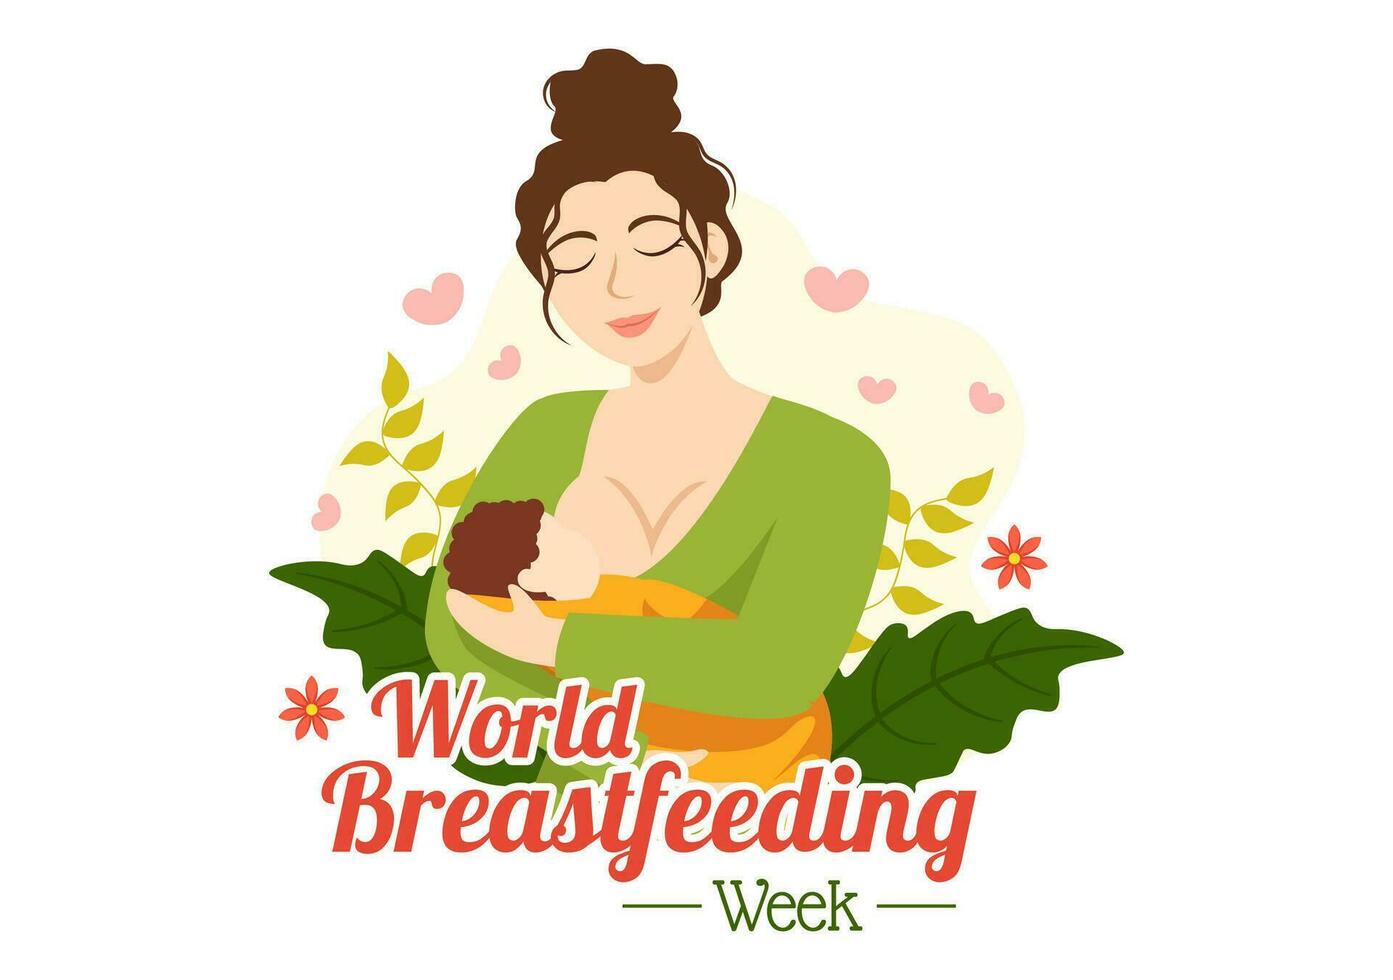 monde allaitement maternel la semaine vecteur illustration de alimentation de bébés avec Lait de une les femmes Sein dans plat dessin animé main tiré modèles